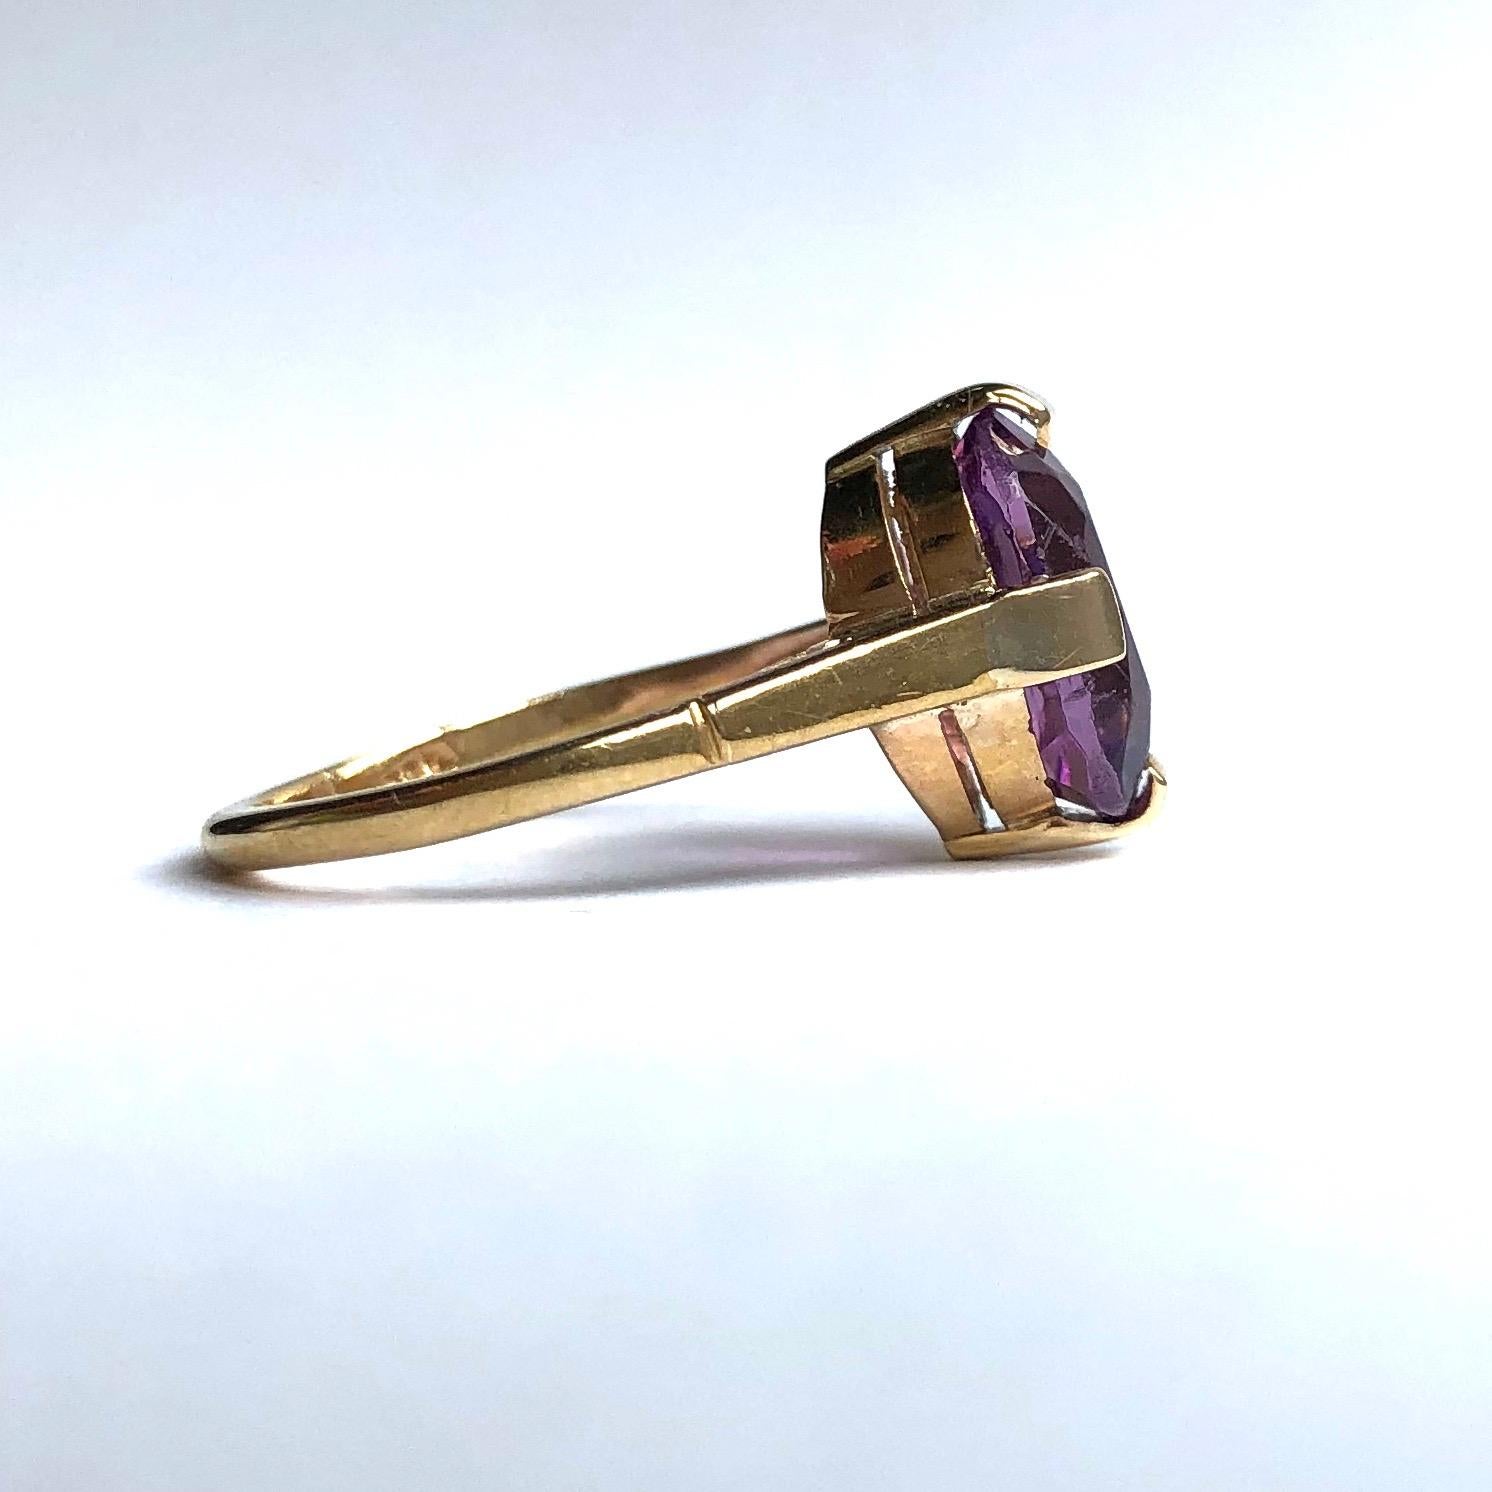 Dieser wunderschöne Cocktailring enthält einen Amethysten, der glänzend und hellviolett ist. Der Stein wird von breiten Krallen gehalten und der Rest des Rings ist sehr einfach und in 9-karätigem Gold modelliert. 

Ring Größe: L 1/2 oder 6 
Stein